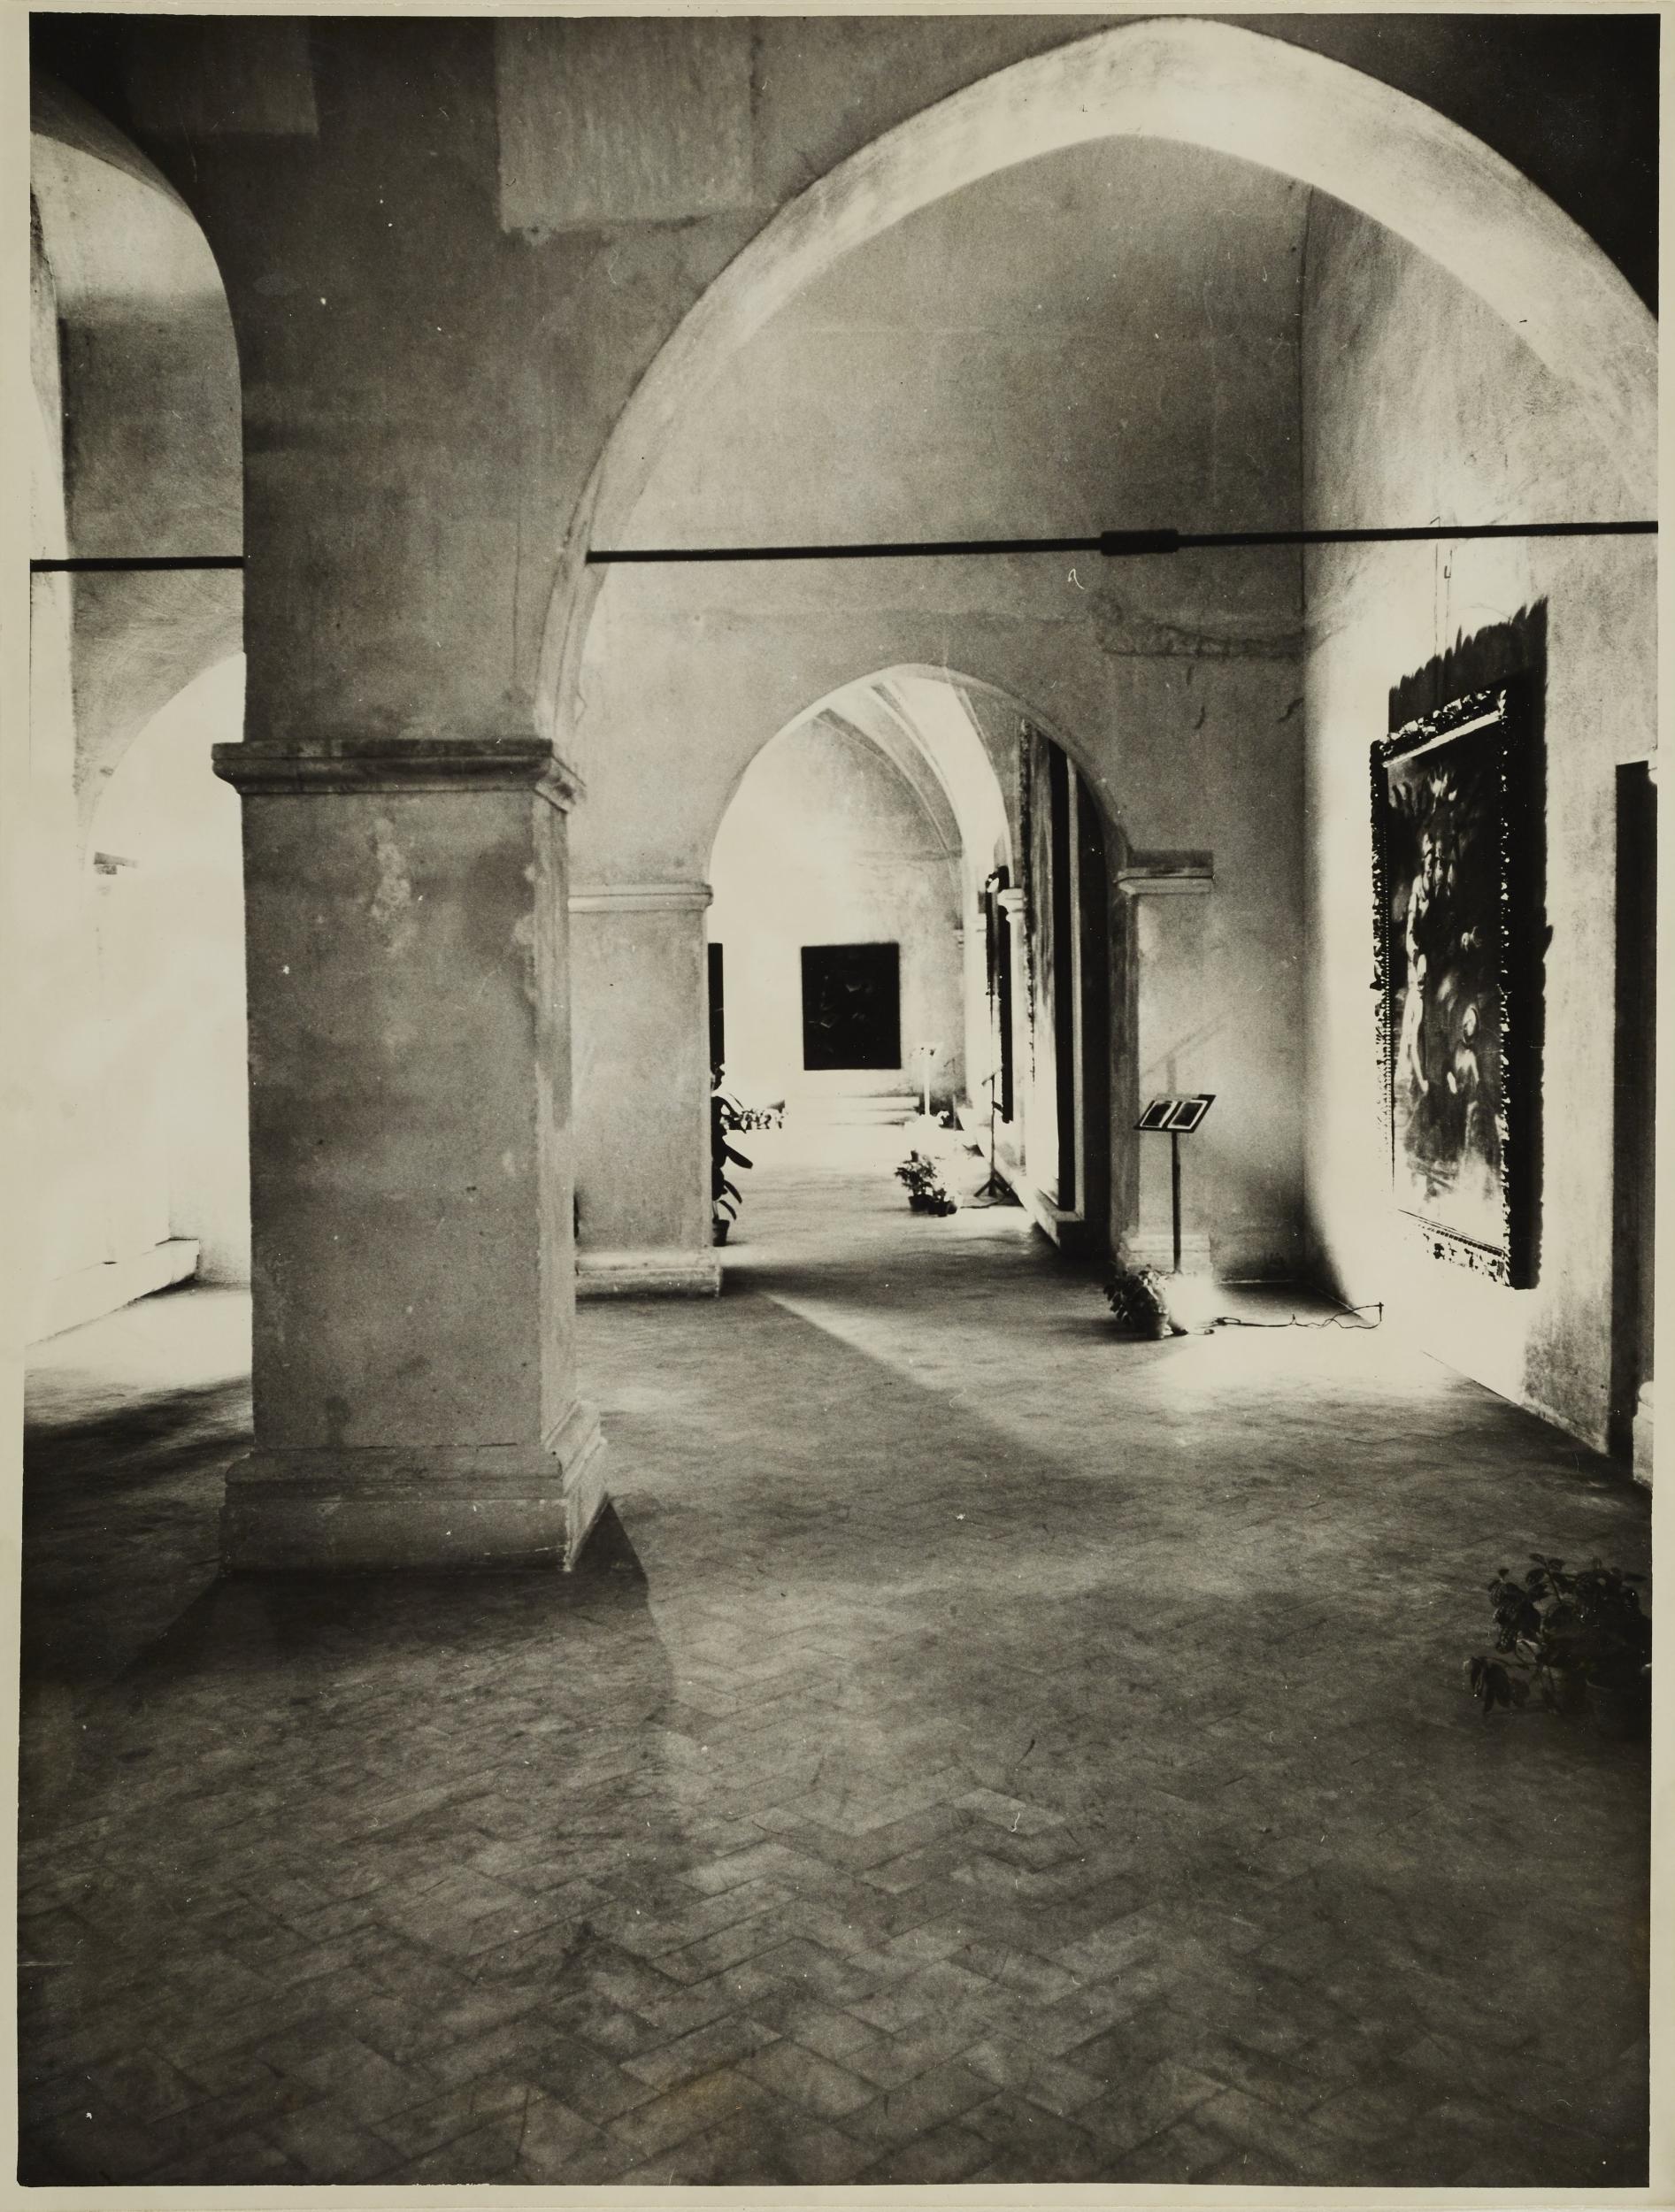 Fotografo non identificato, Bari - Castello Svevo, allestimento della mostra per la XI settimana dei musei, 1968, gelatina ai sali d'argento/carta, MPI136579